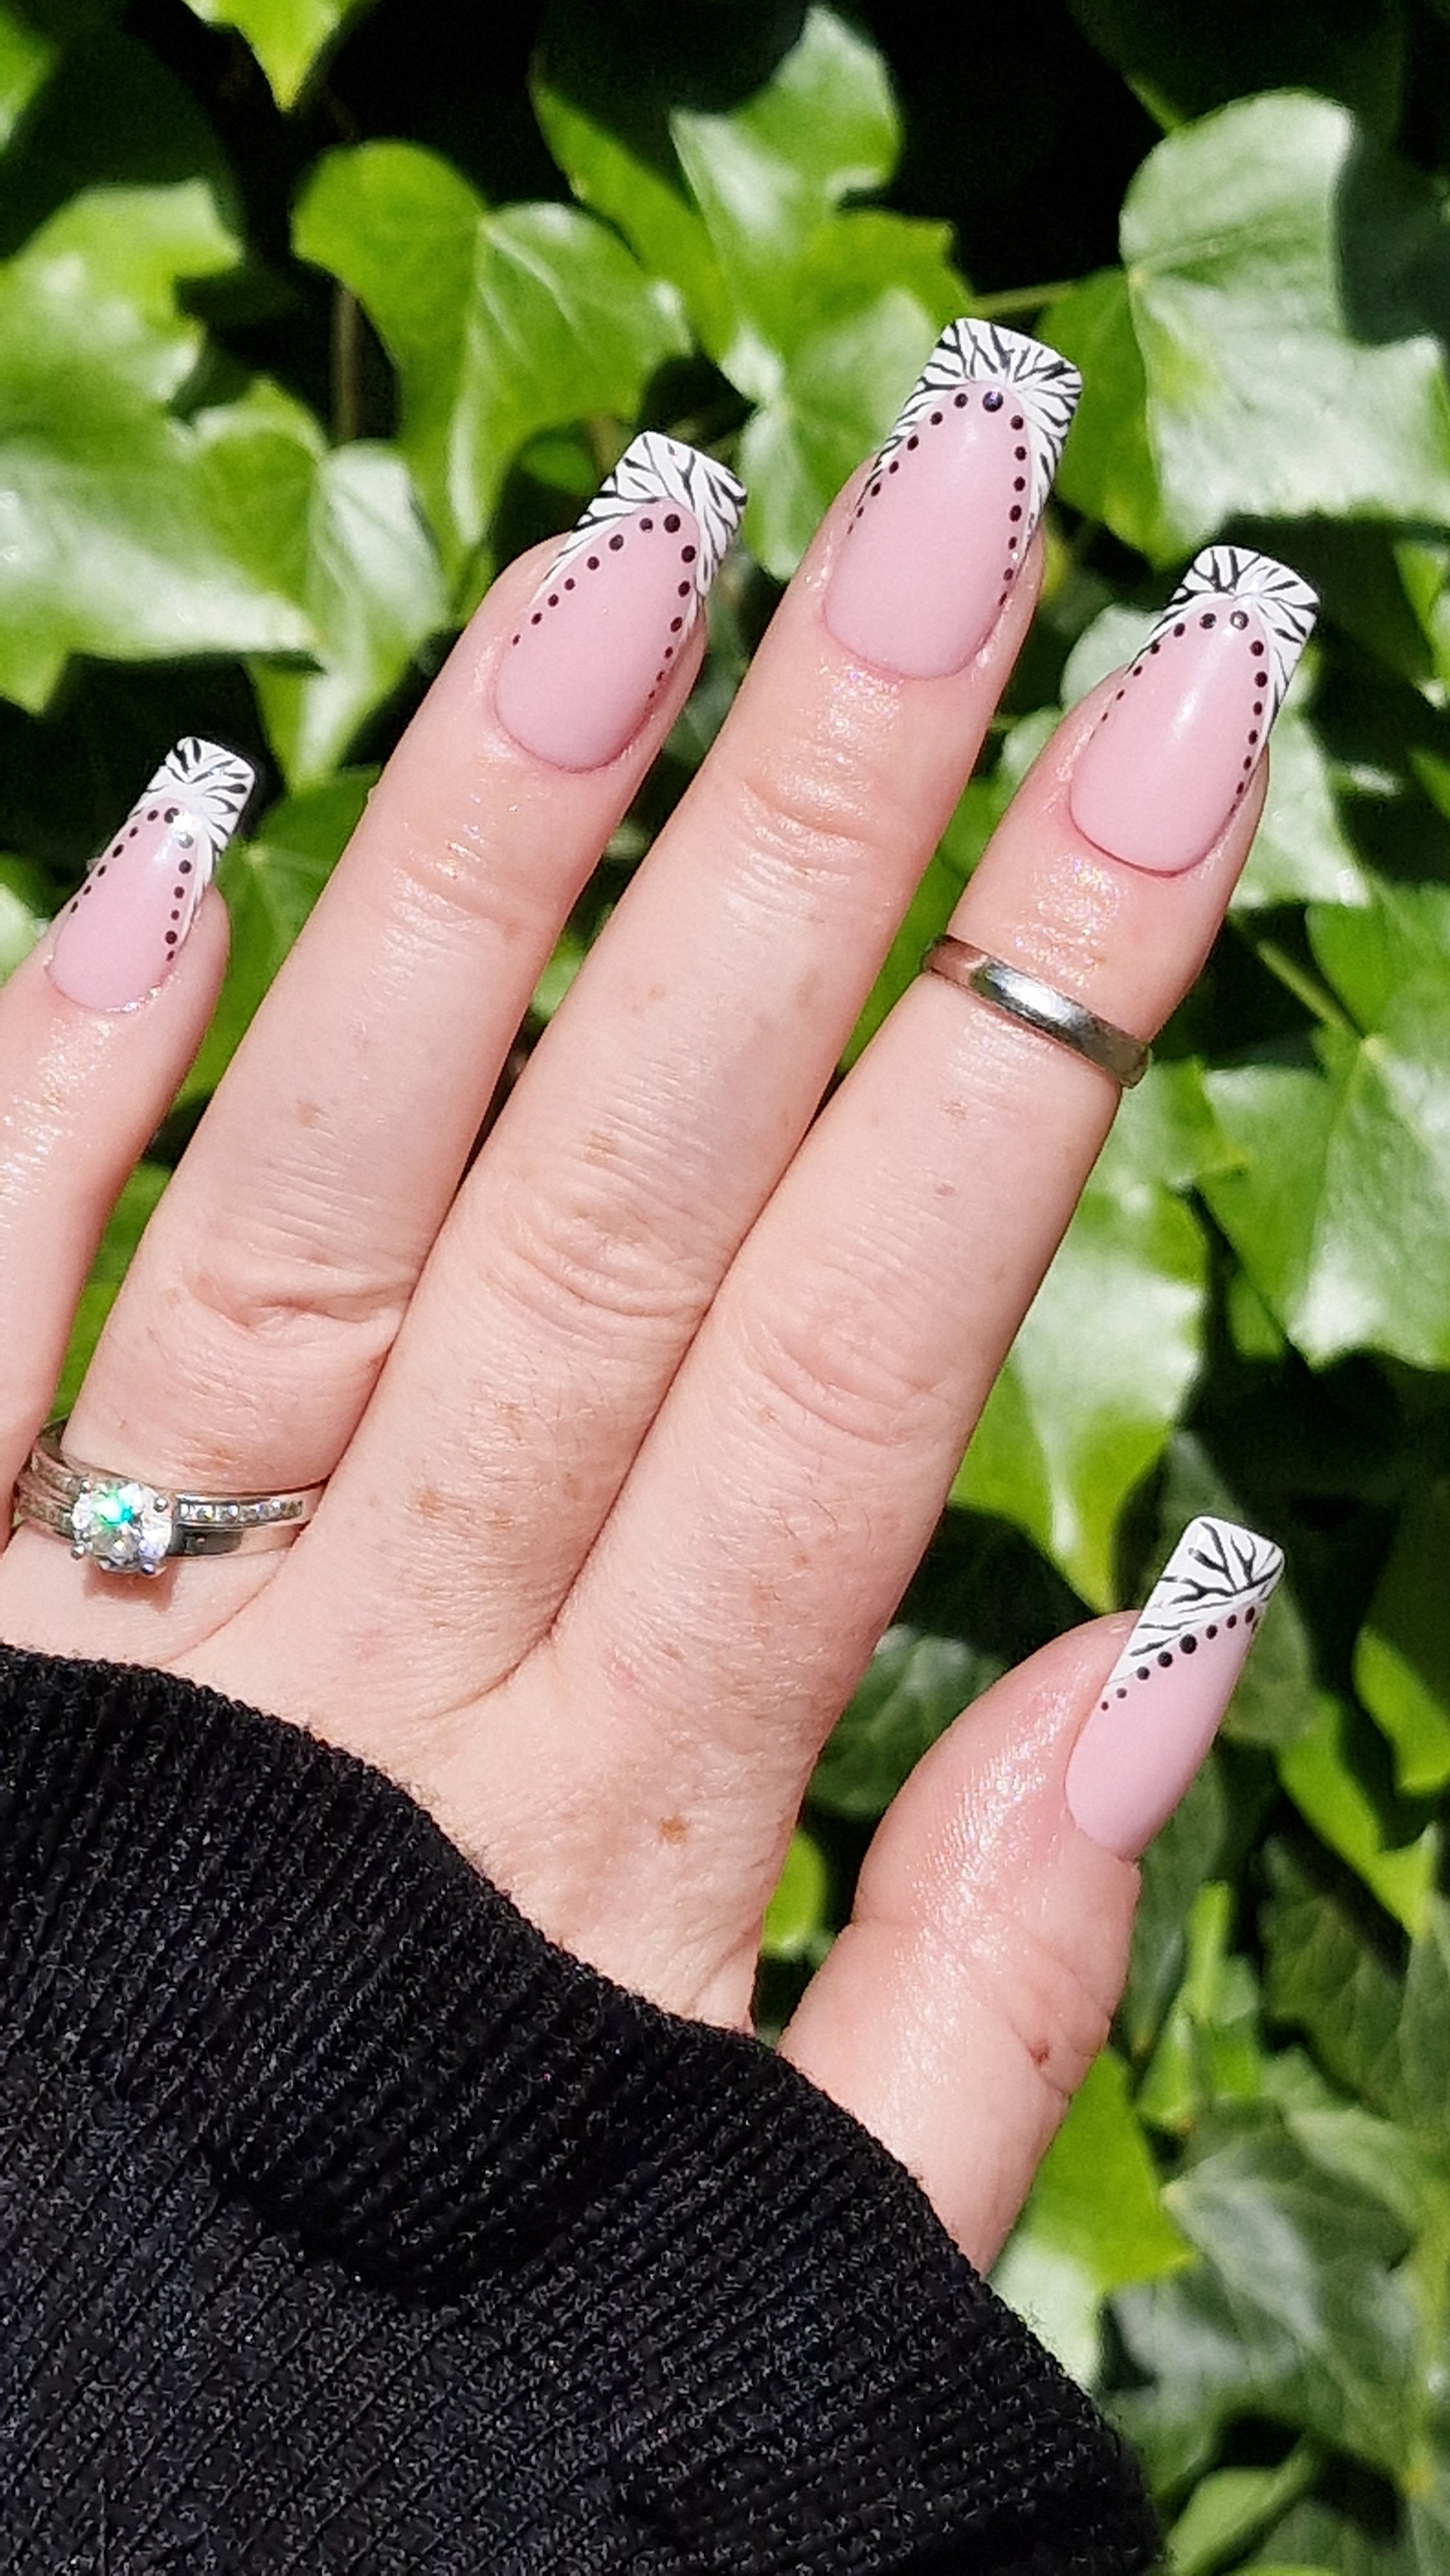 Natural nails! 𝒔𝒕𝒓𝒖𝒄𝒕𝒖𝒓𝒆𝒅 𝒈𝒆𝒍 𝒎𝒂𝒏𝒊𝒄𝒖𝒓𝒆, 𝑵𝒂𝒕𝒖𝒓𝒂𝒍  𝑵